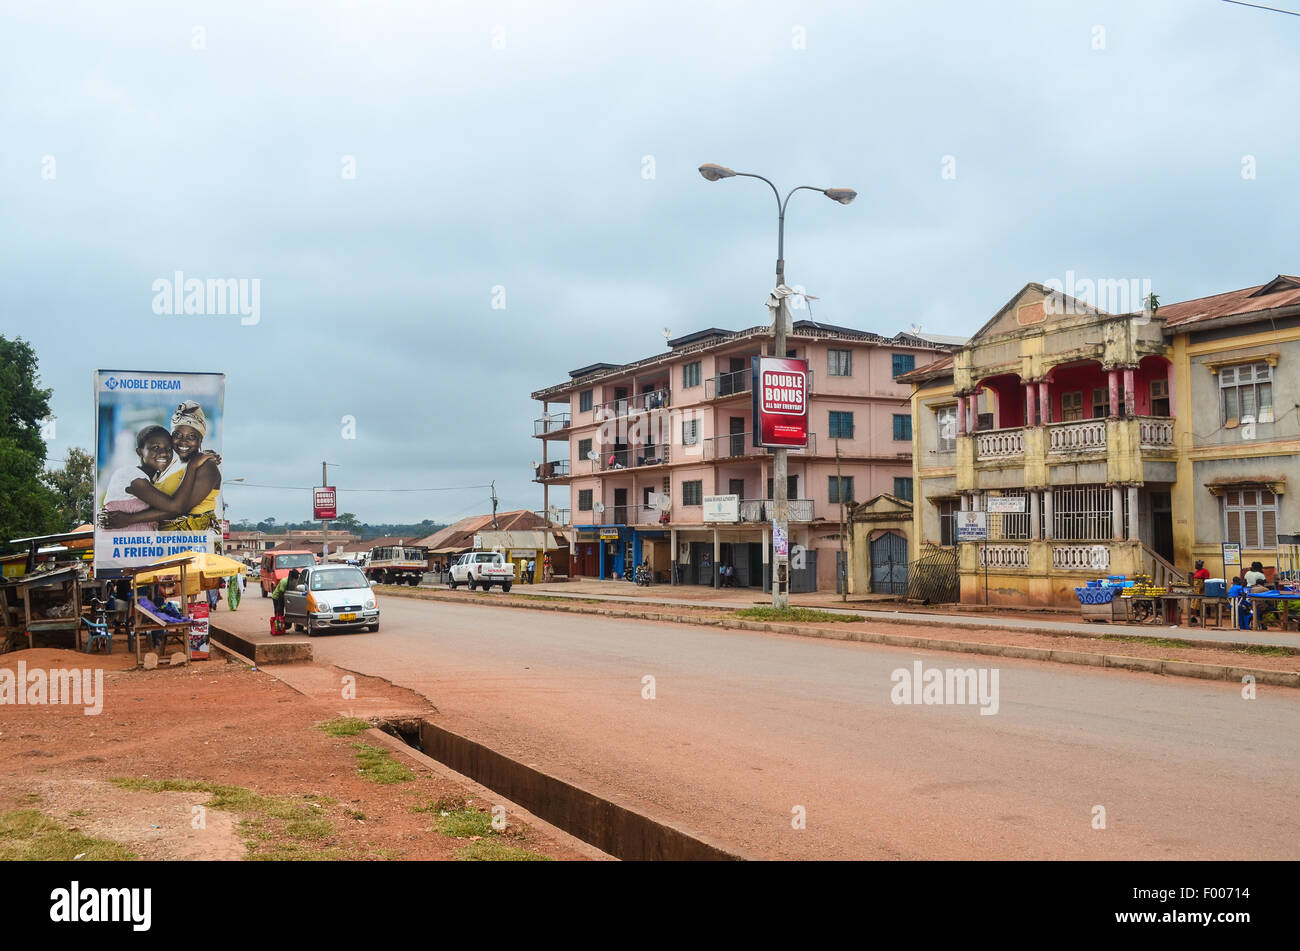 Town center of Dormaa Ahenkro, Ghana Stock Photo